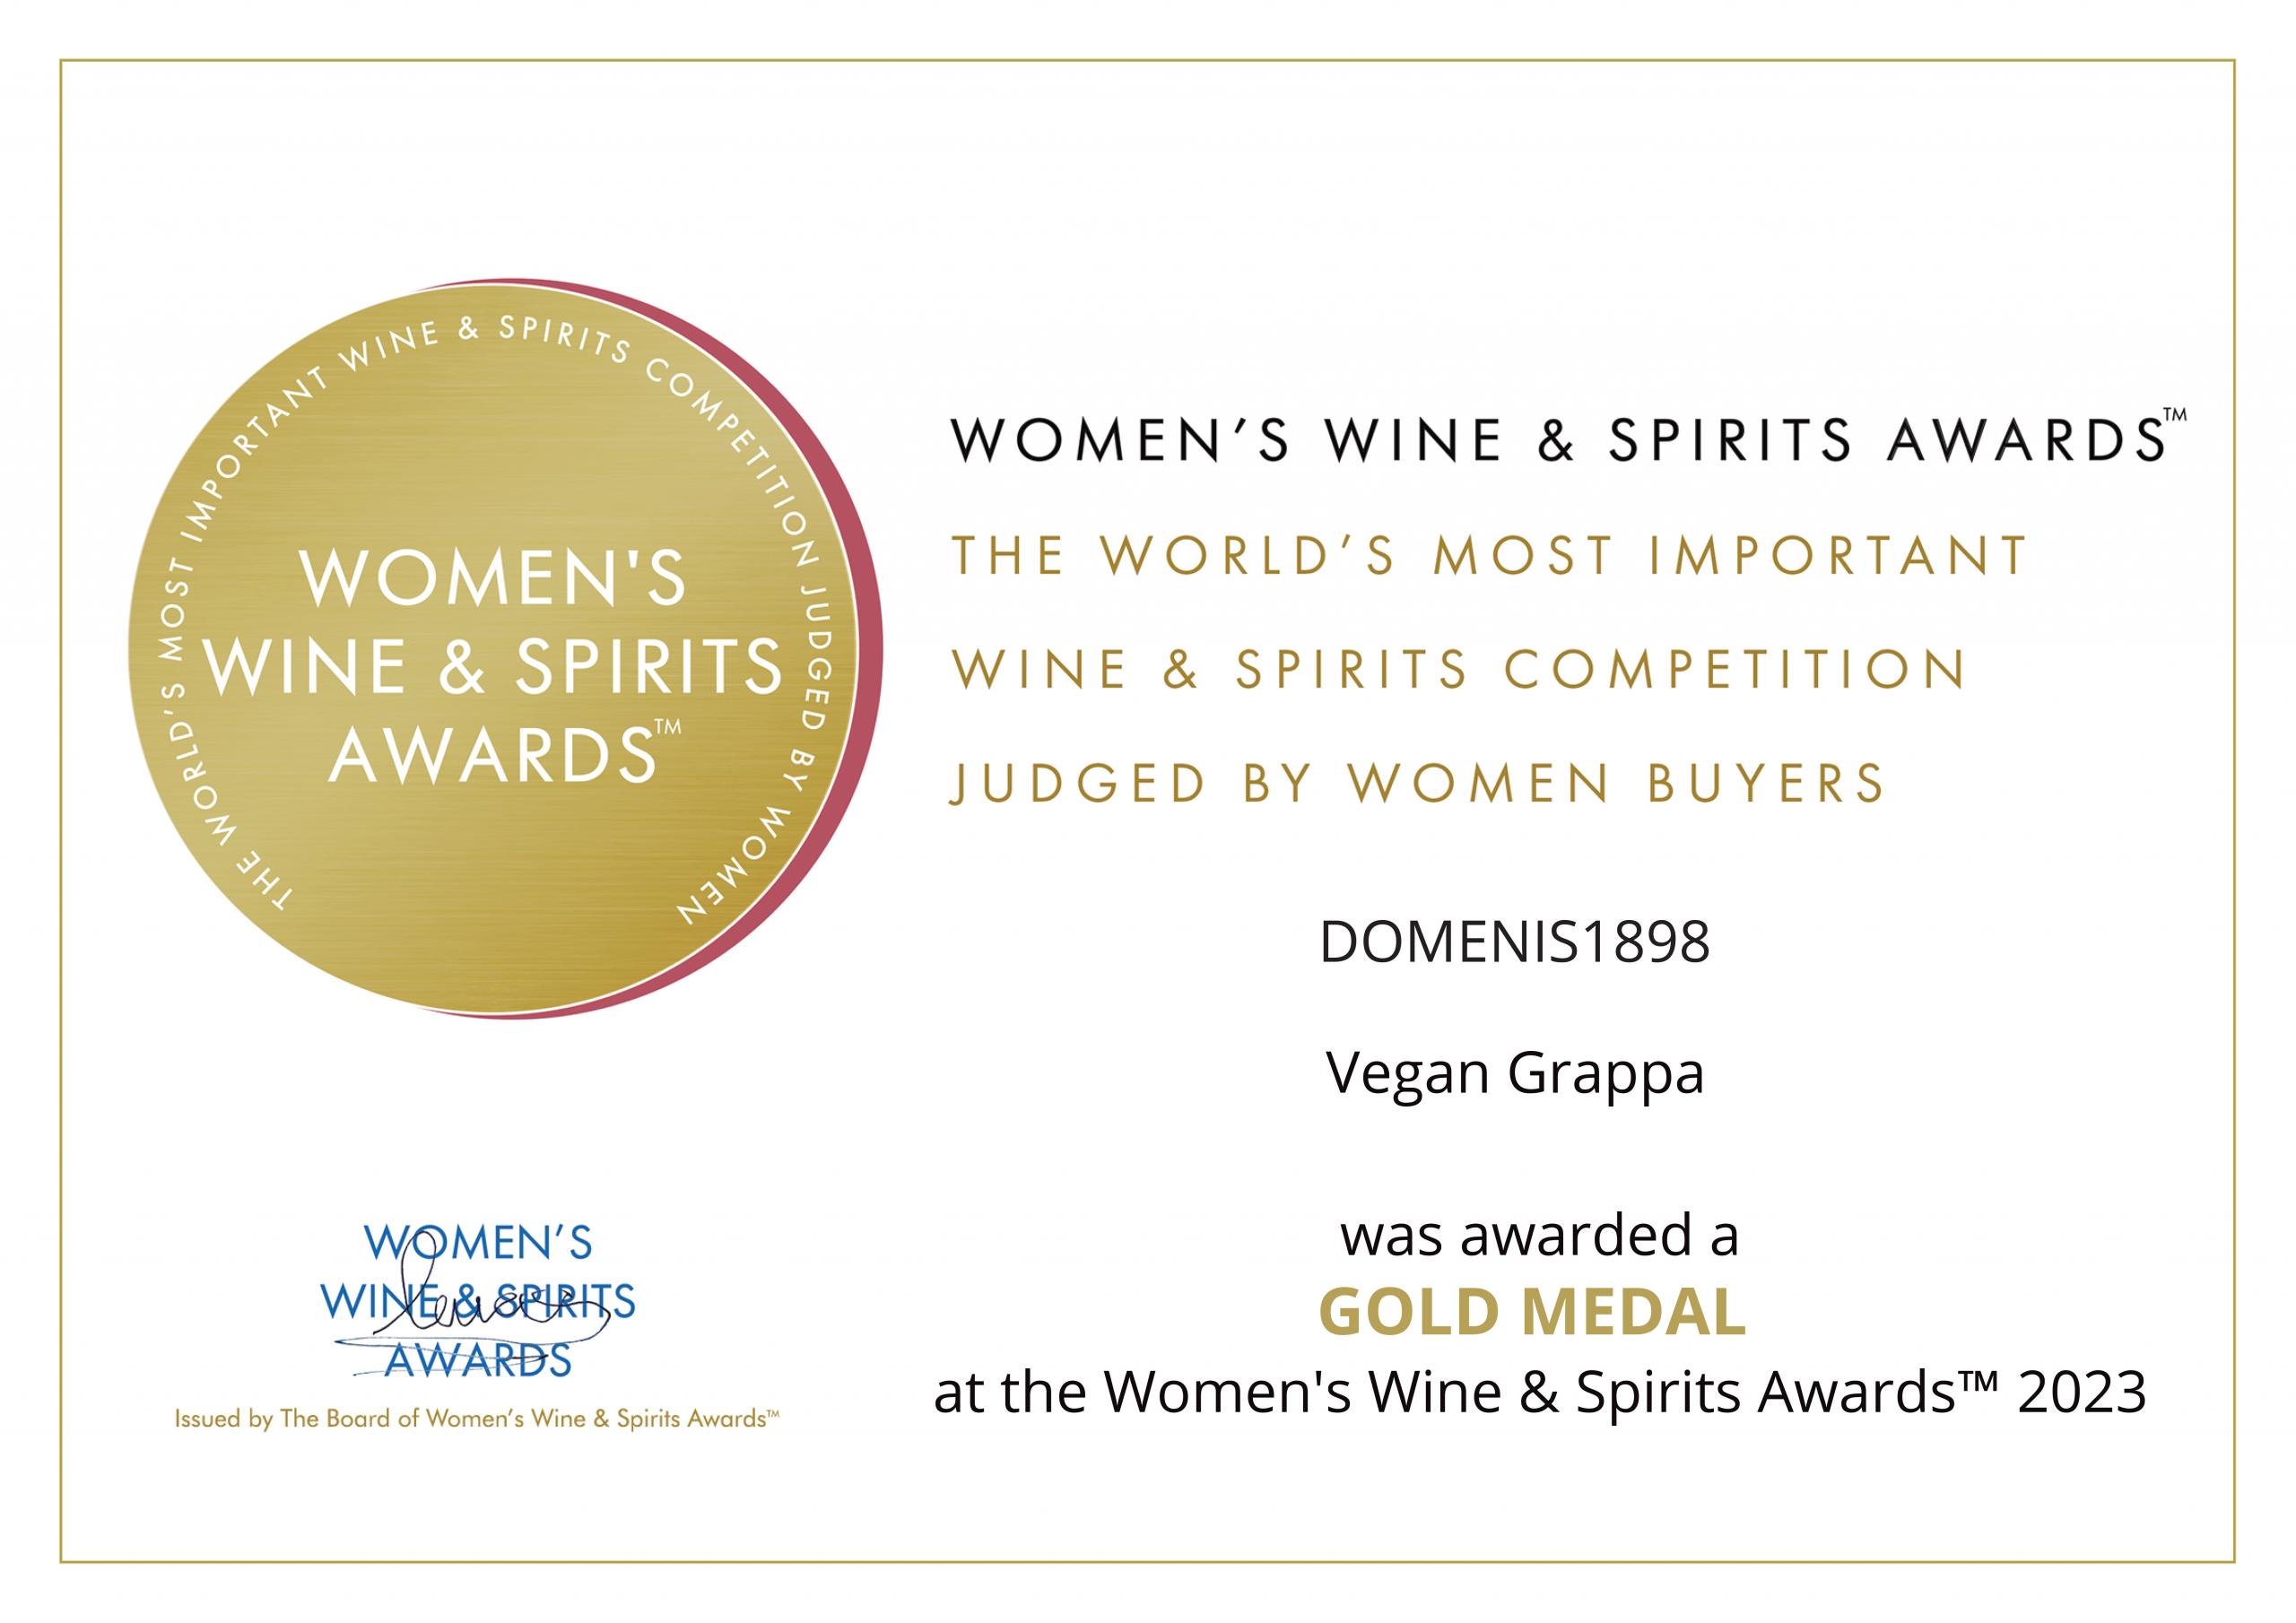 Women’s Wine & Spirit Awards 2023 – Gold Medal – Vegan Grappa